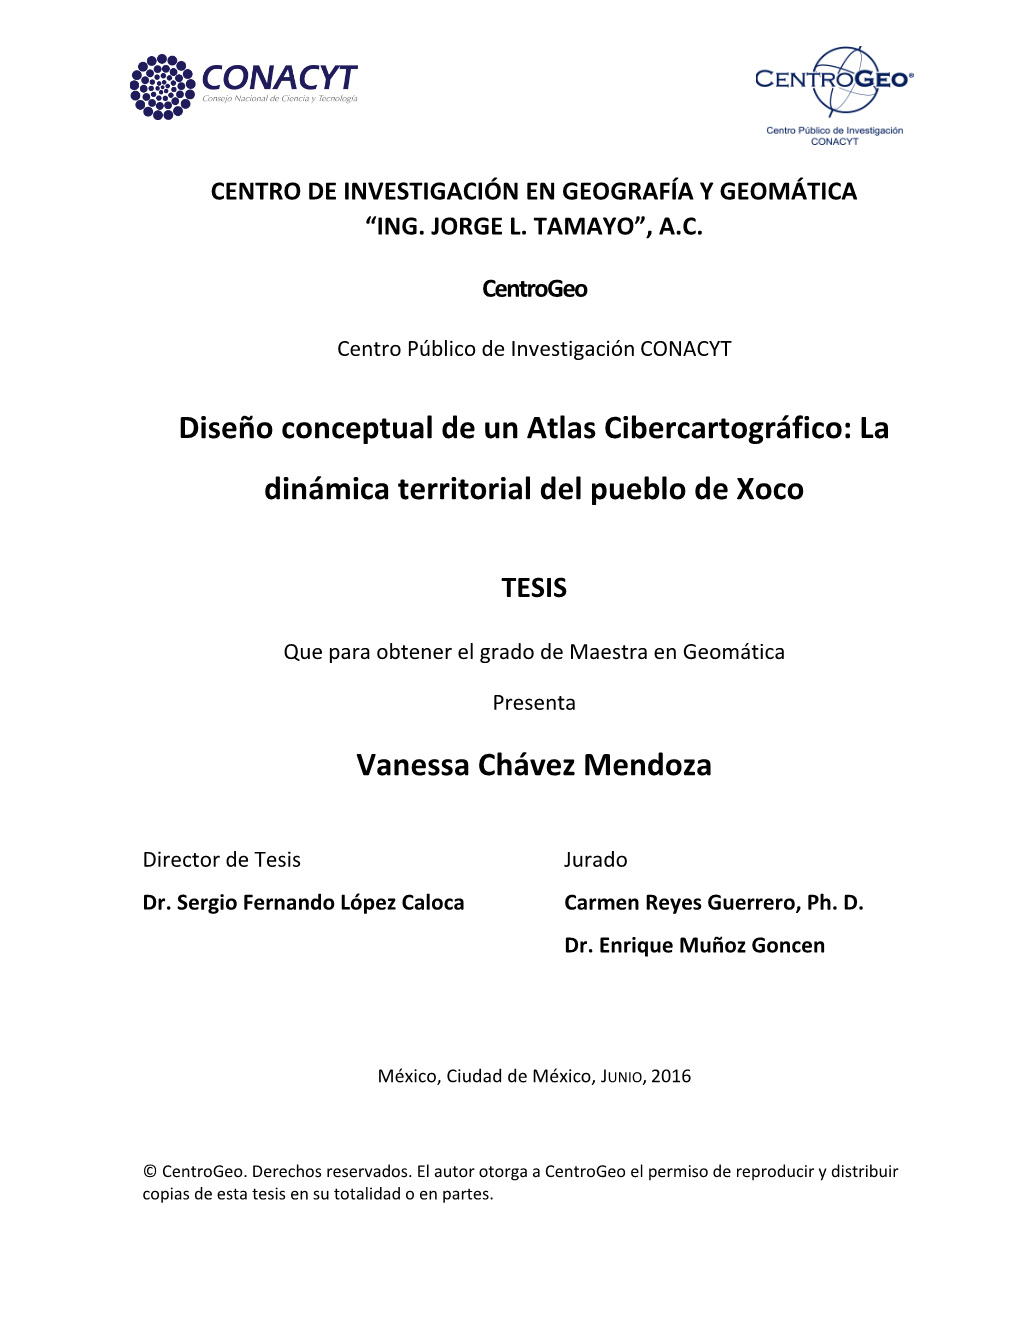 Diseño Conceptual De Un Atlas Cibercartográfico: La Dinámica Territorial Del Pueblo De Xoco Vanessa Chávez Mendoza